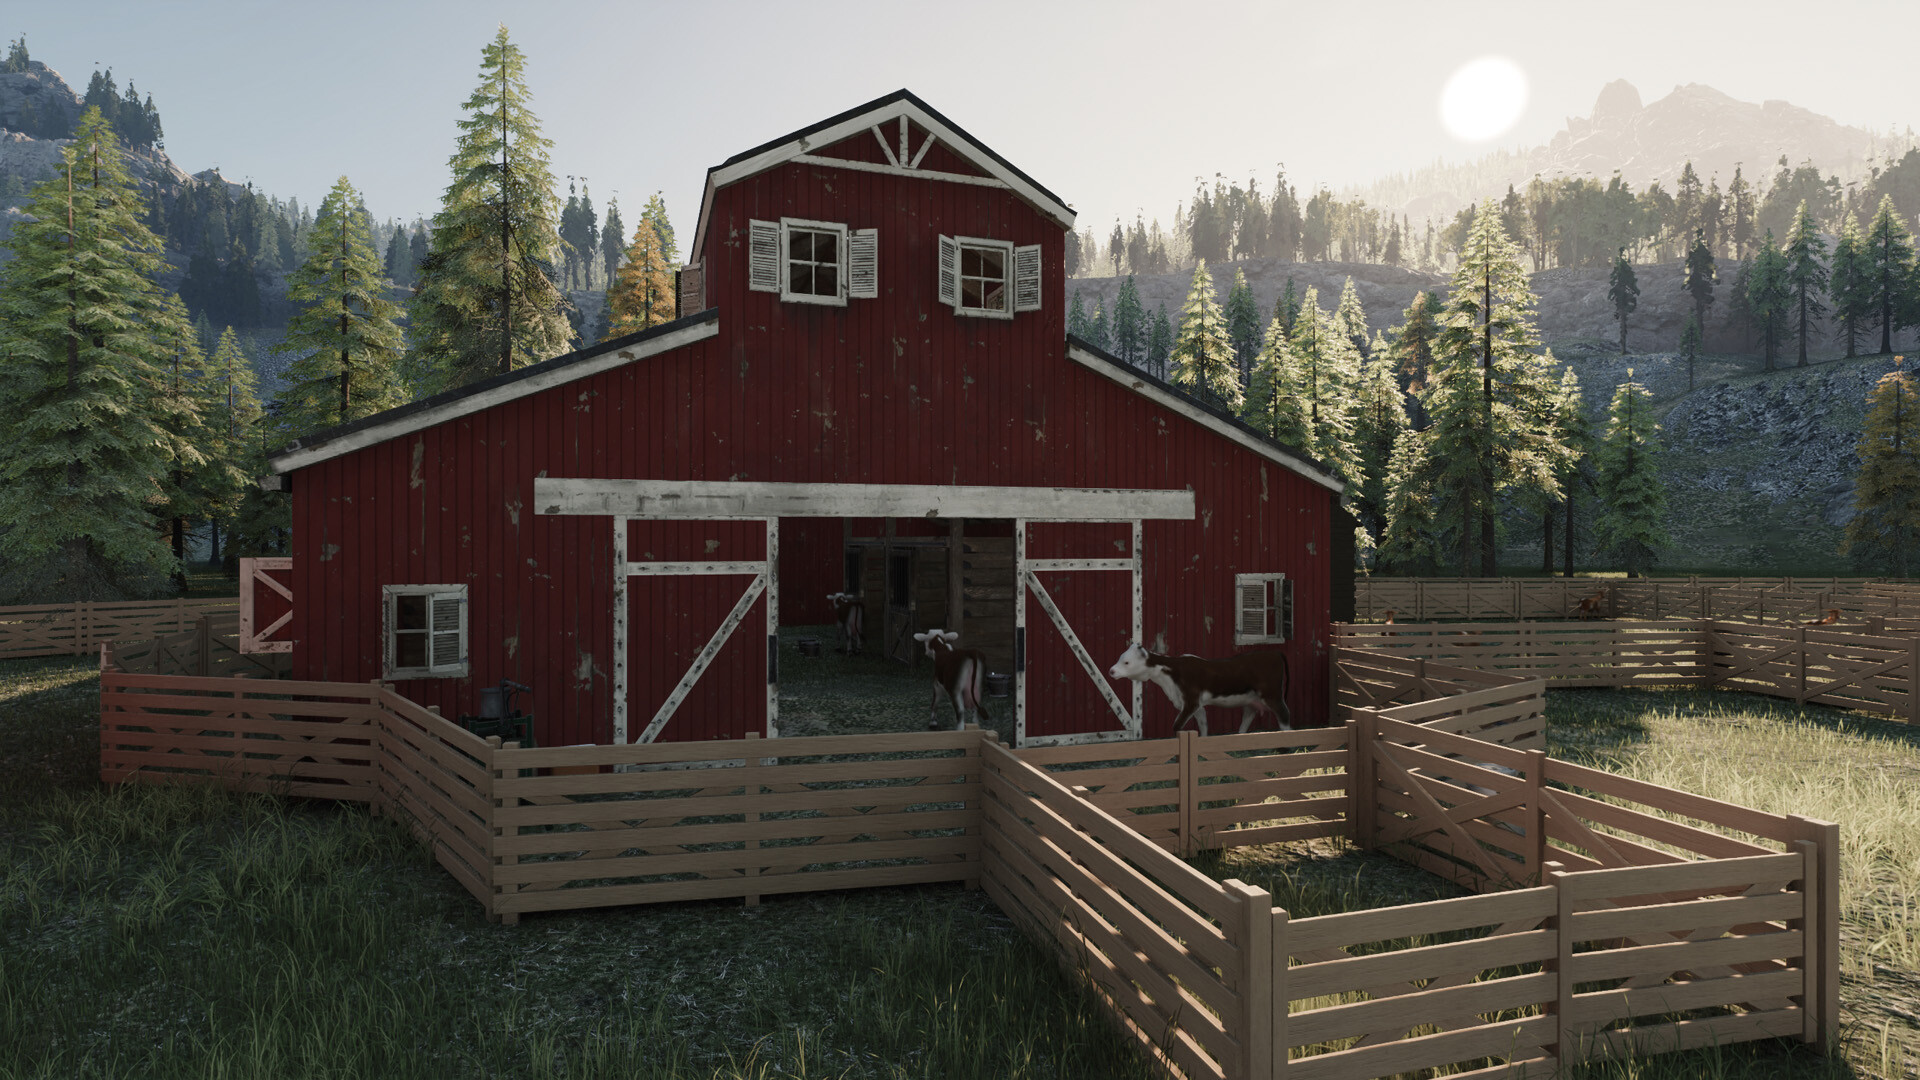 Ranch Simulator, PC